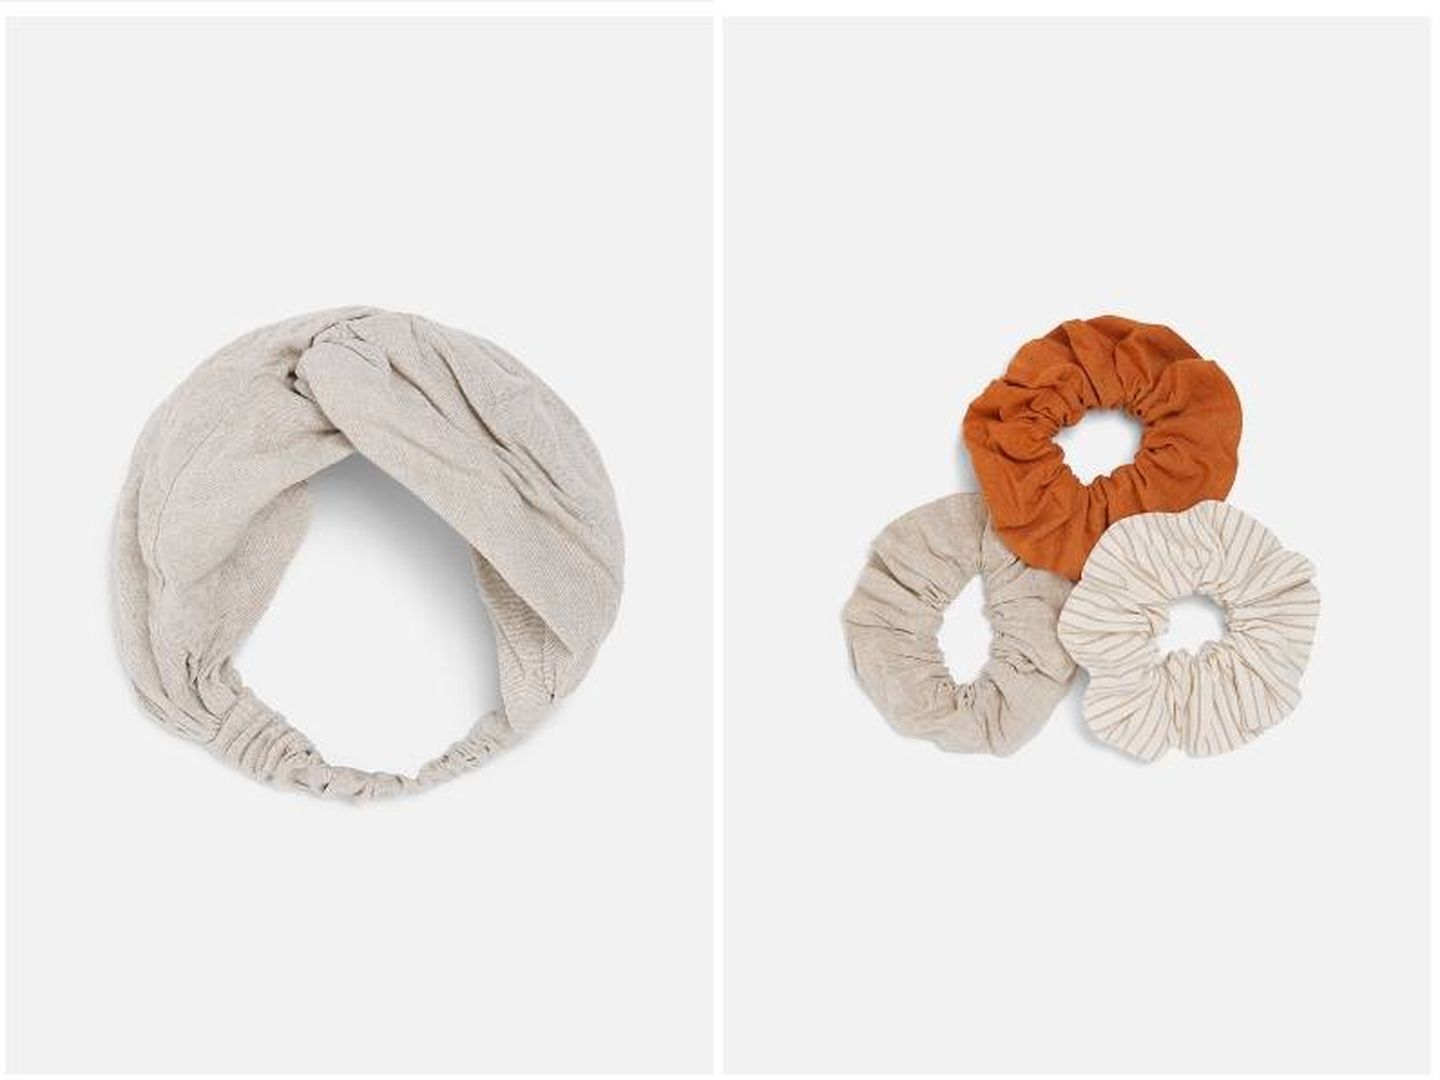 Coleteros de lino y algodón (el pack de tres) y la diadema en el mismo tejido (ambas 7,95 euros).